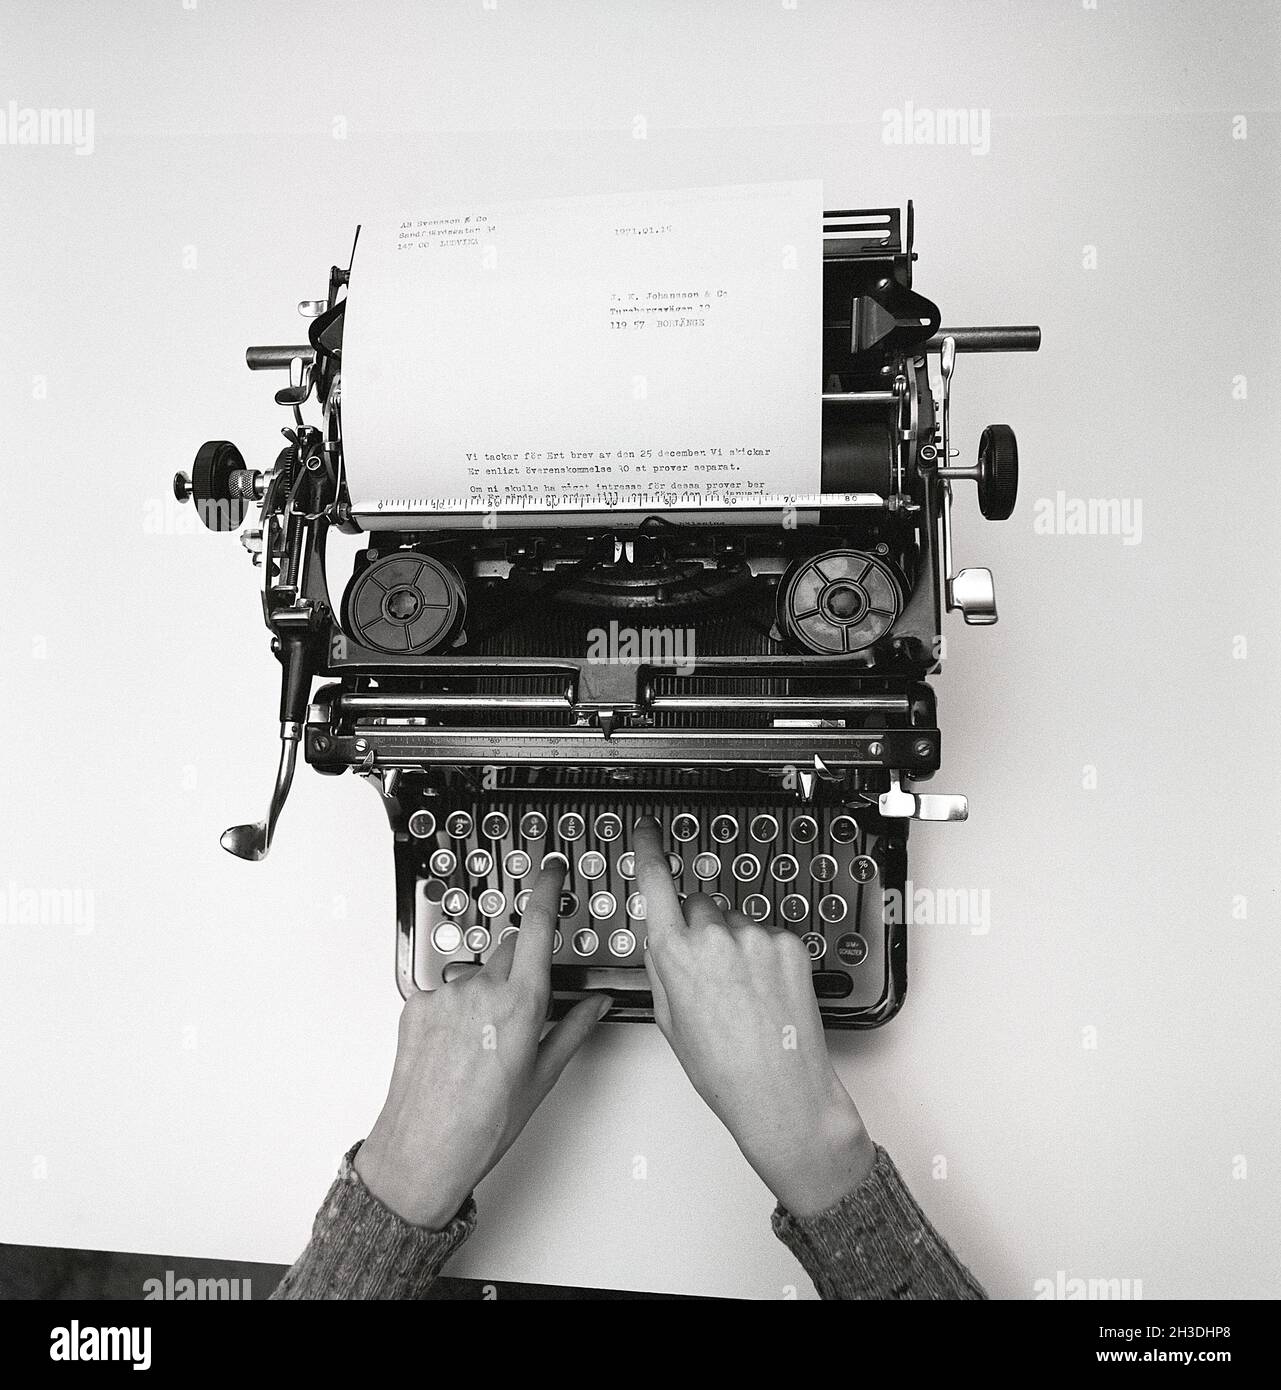 La máquina de escribir. Aquí una variante manual, no eléctrica. Las teclas  de cada letra están conectadas a un brazo, y cuando se presiona golpea la  hoja de papel con una cinta